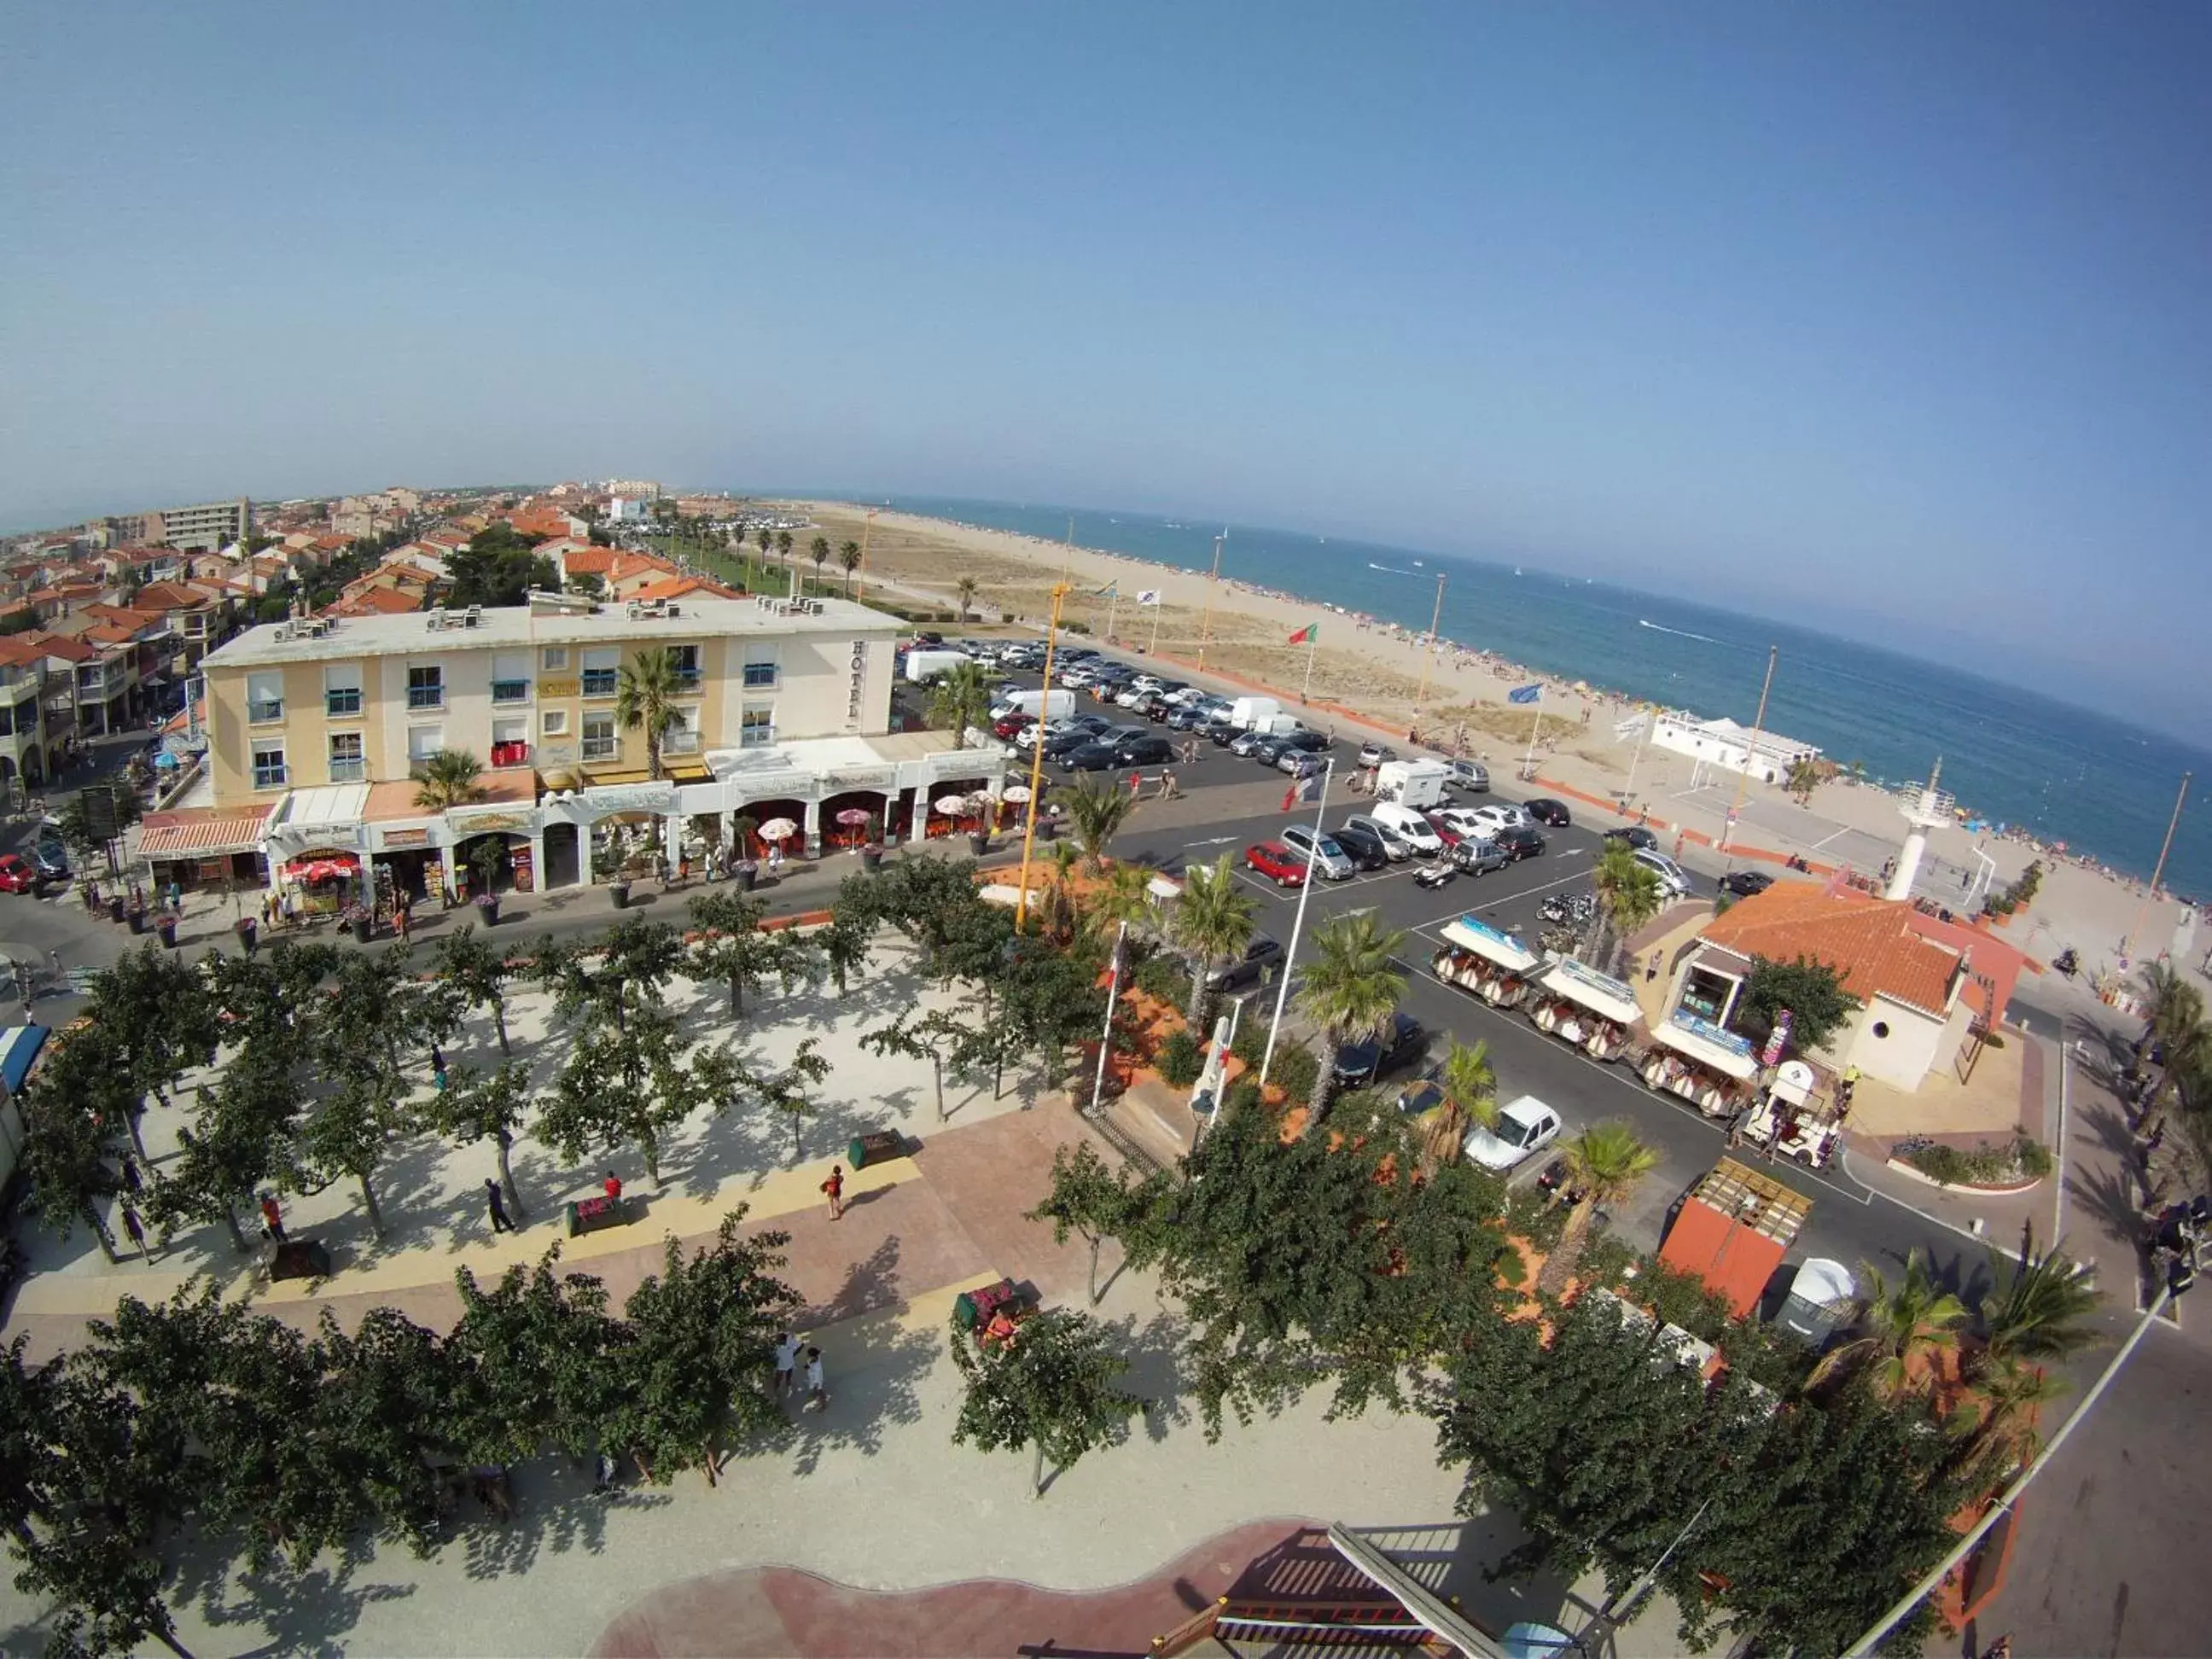 Area and facilities, Bird's-eye View in Hotel de la Plage - Barcares